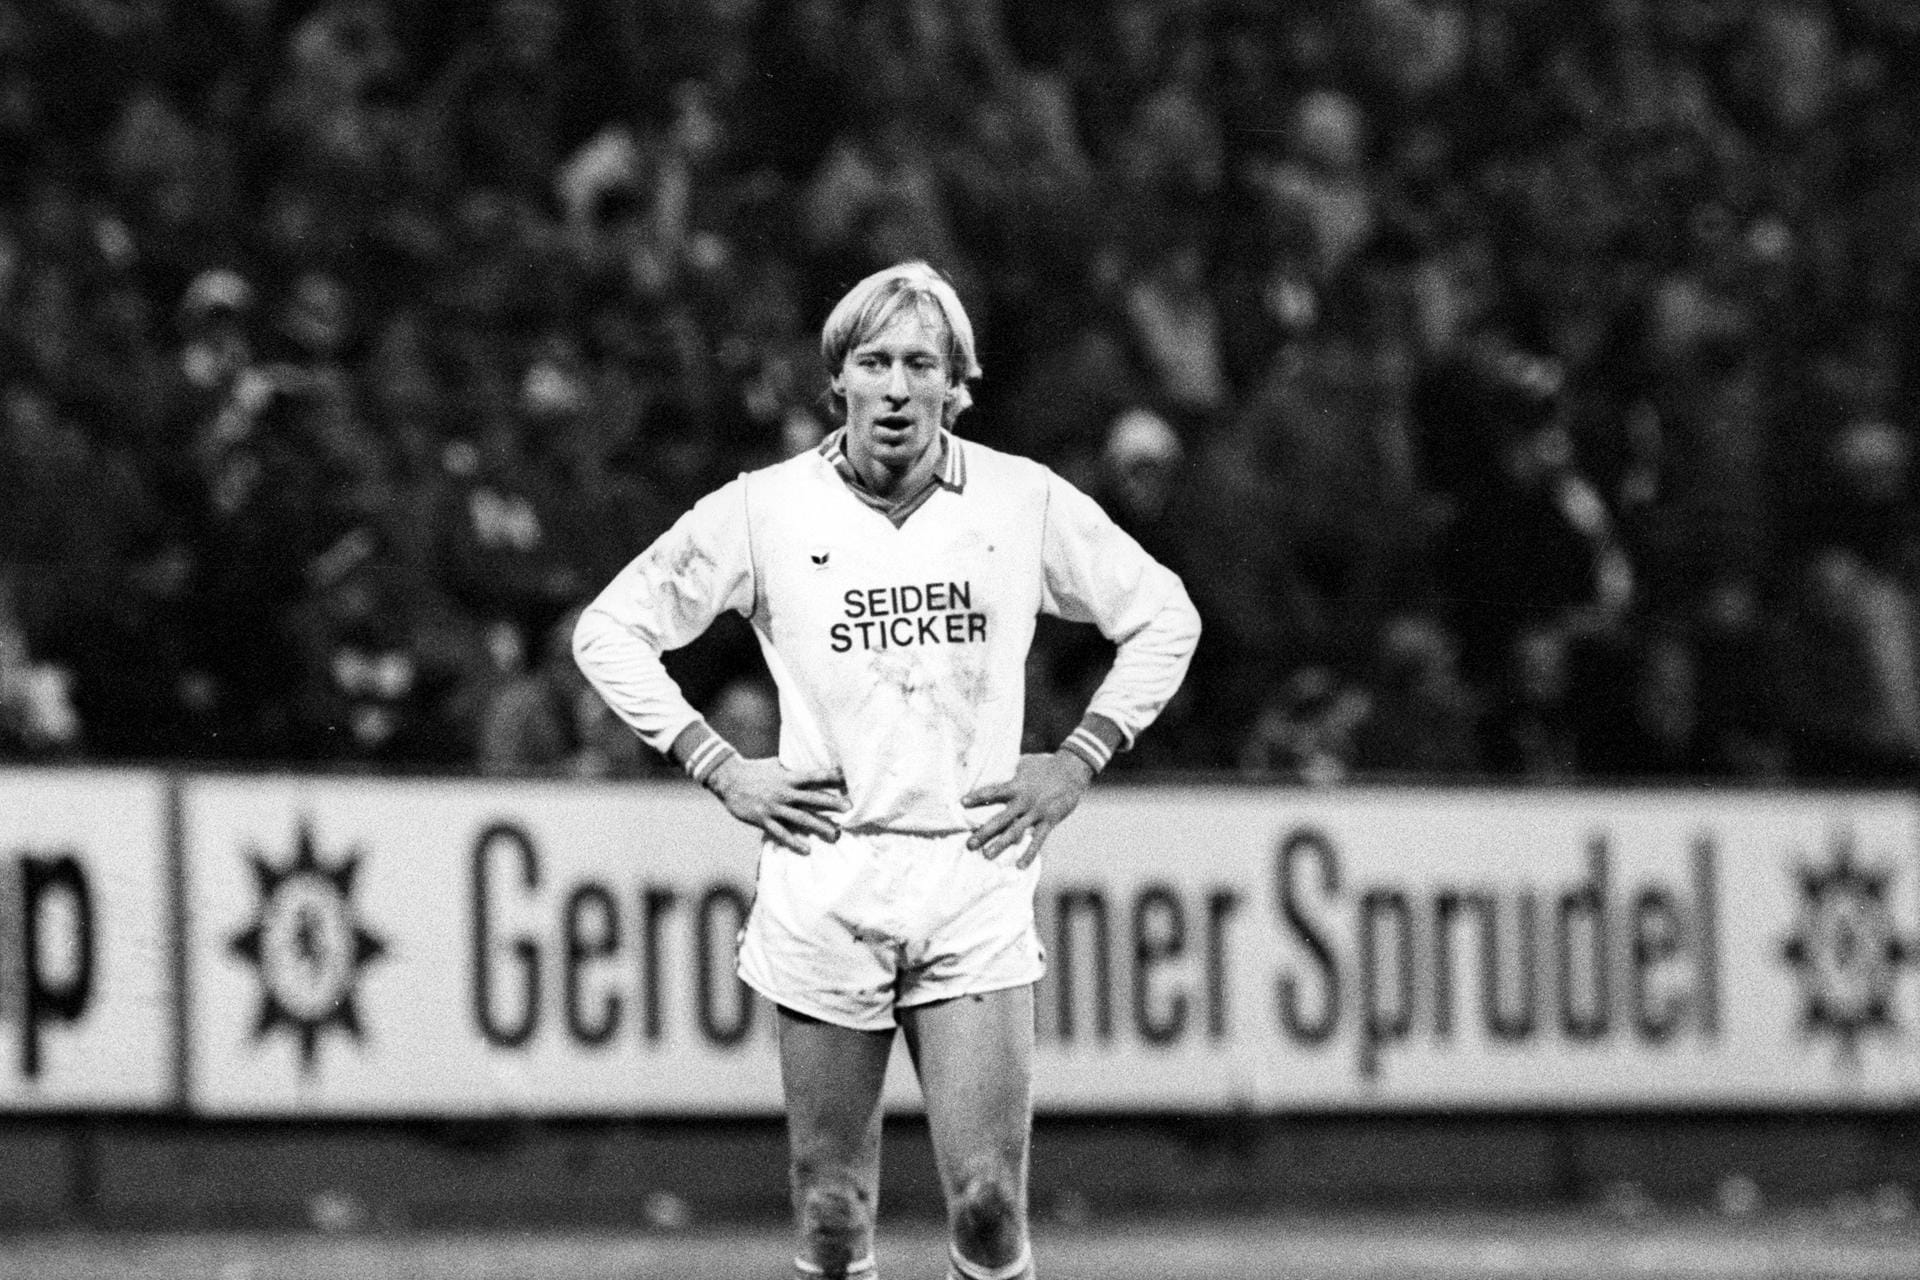 Christian Sackewitz (1976-1981) – Sackewitz feierte 1980 den Bundesliga-Aufstieg mit der Arminia und wurde mit 35 Toren aus 36 Spielen Torschützenkönig der 2. Bundesliga Nord. Landete nach mehreren Stationen in Berlin, wo er bei TeBe seine Karriere beendete und ein Restaurant eröffnete. Seit dem Ende der Wirtschaft arbeitet er in einer Versicherungsagentur.